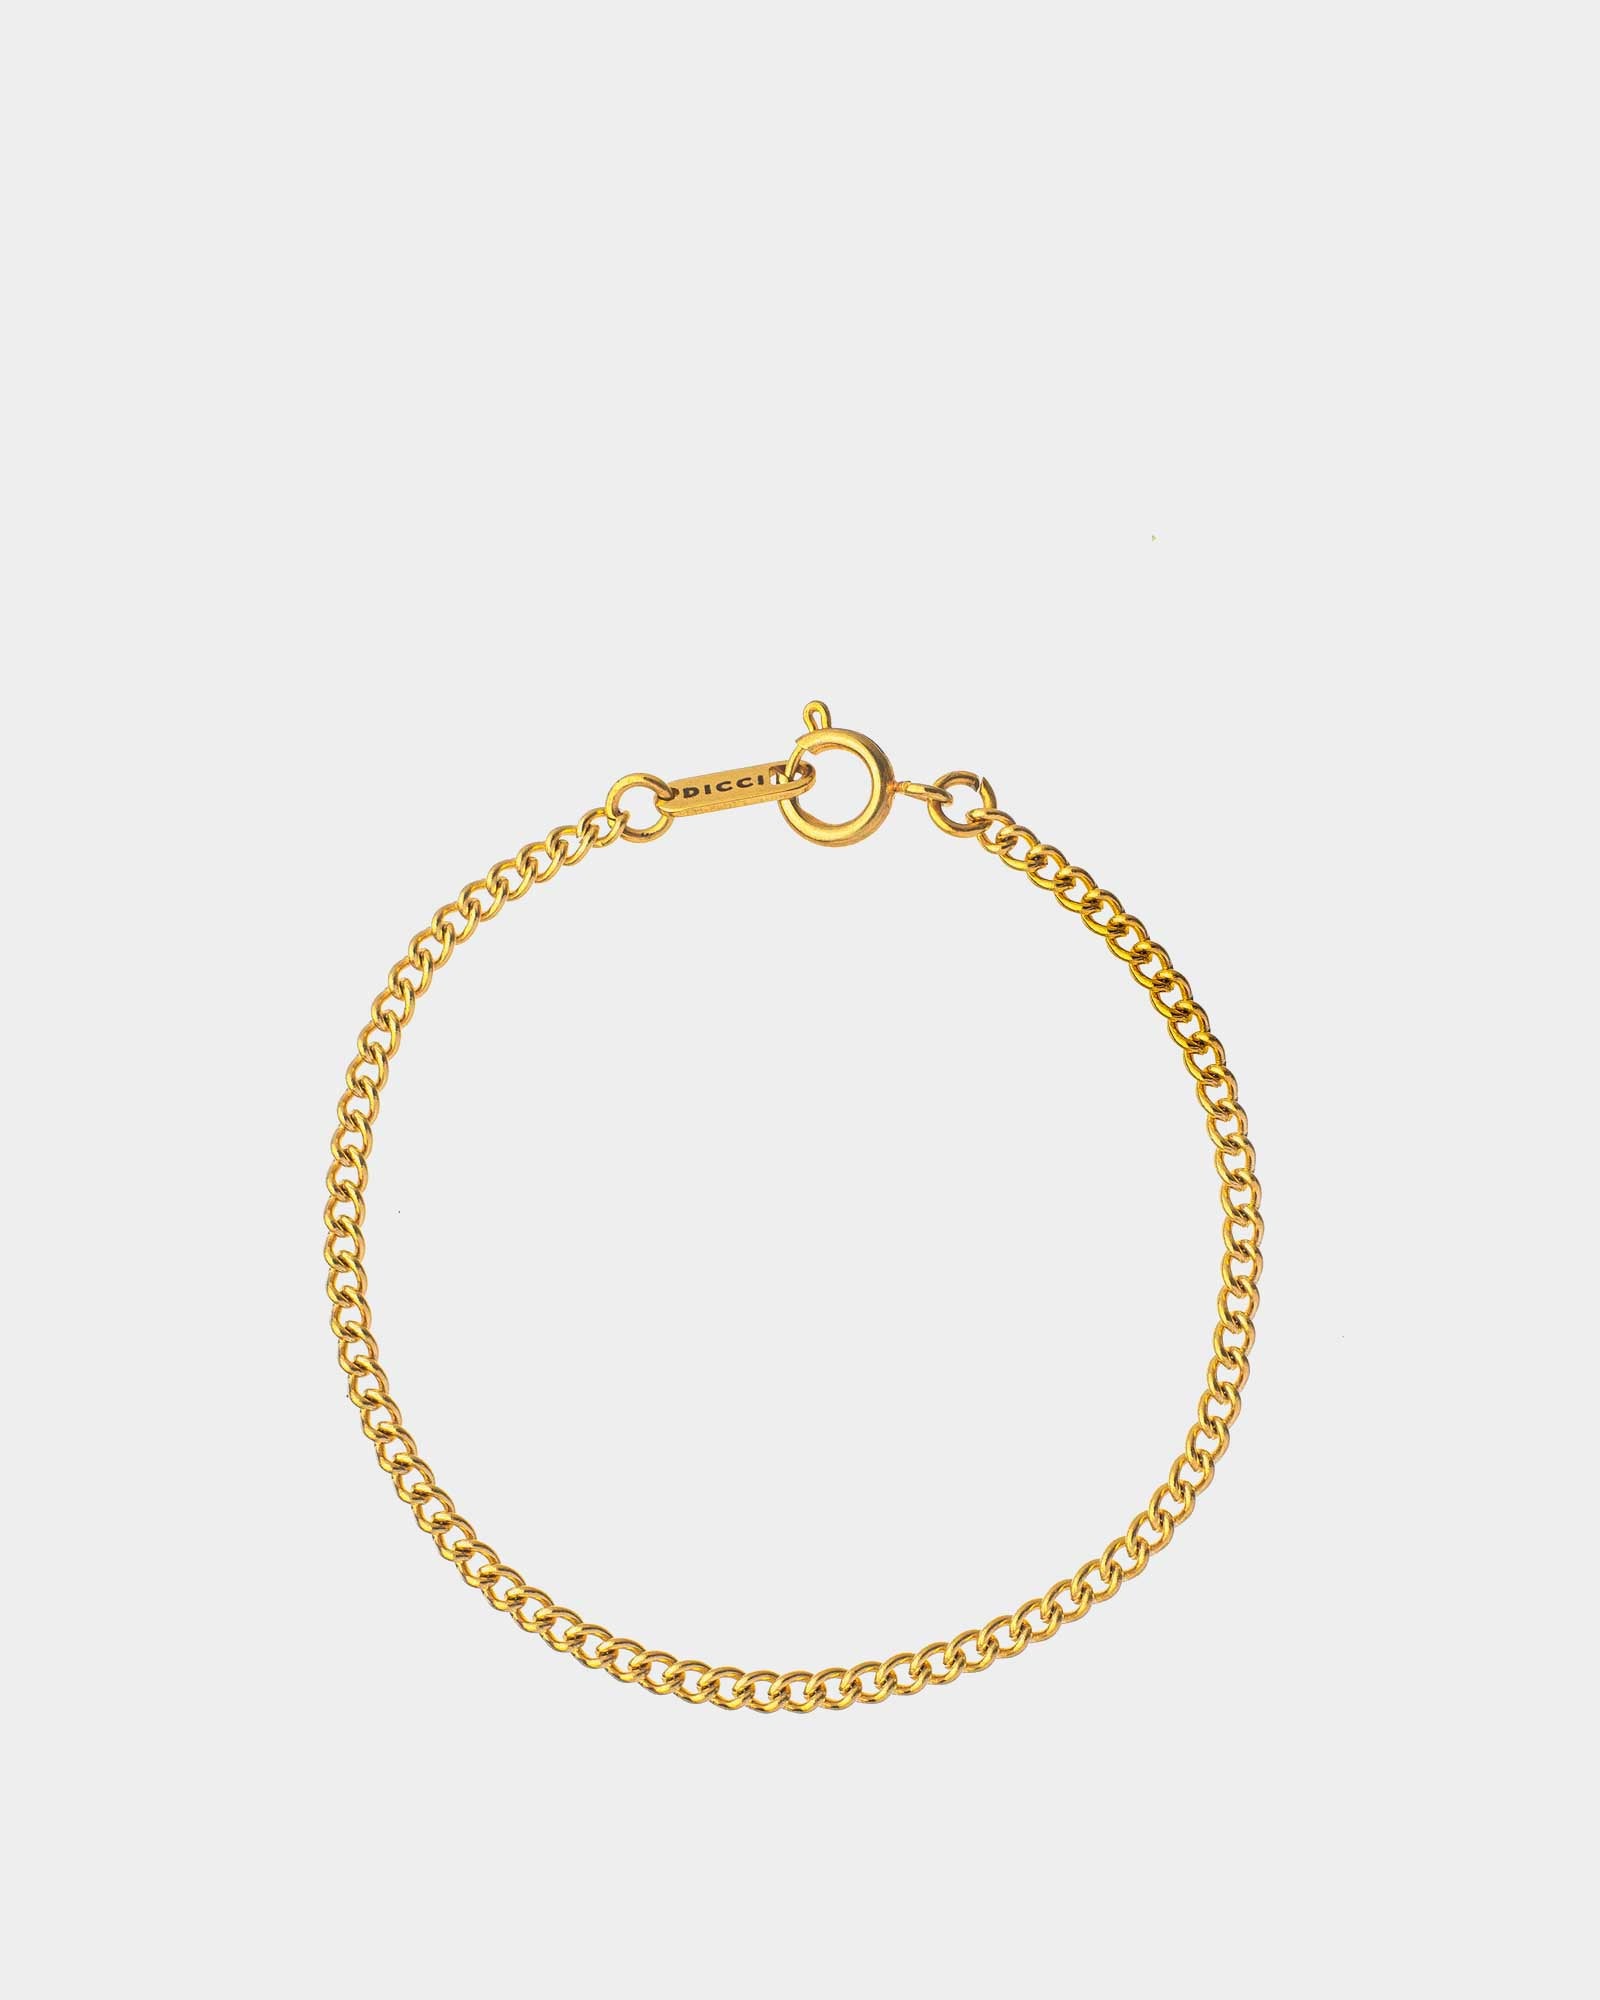 Milano - pulseira milano em aço inoxidável dourado - joias unissexo online - dicci